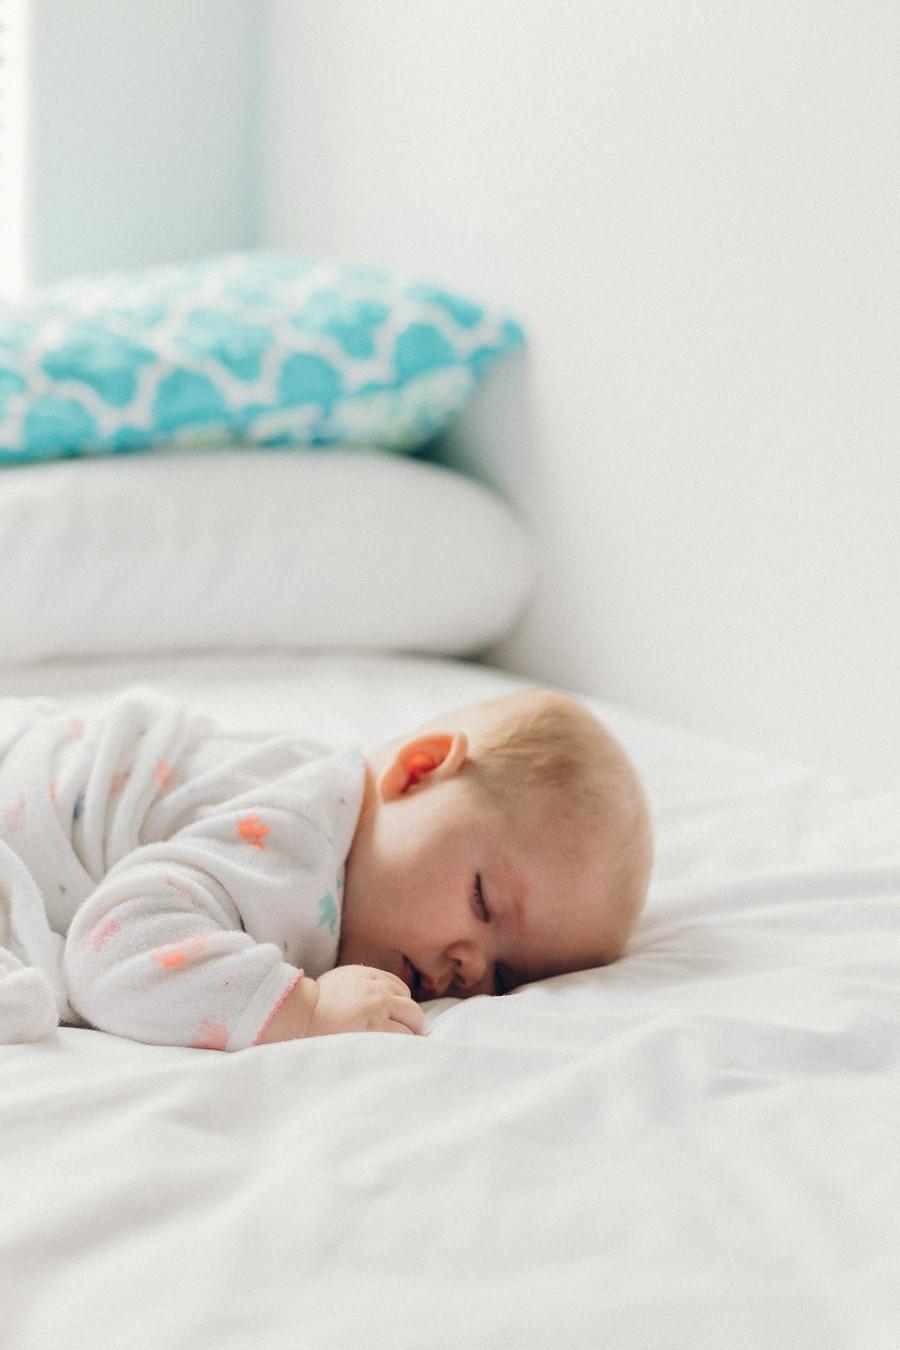 9. Helps baby sleep